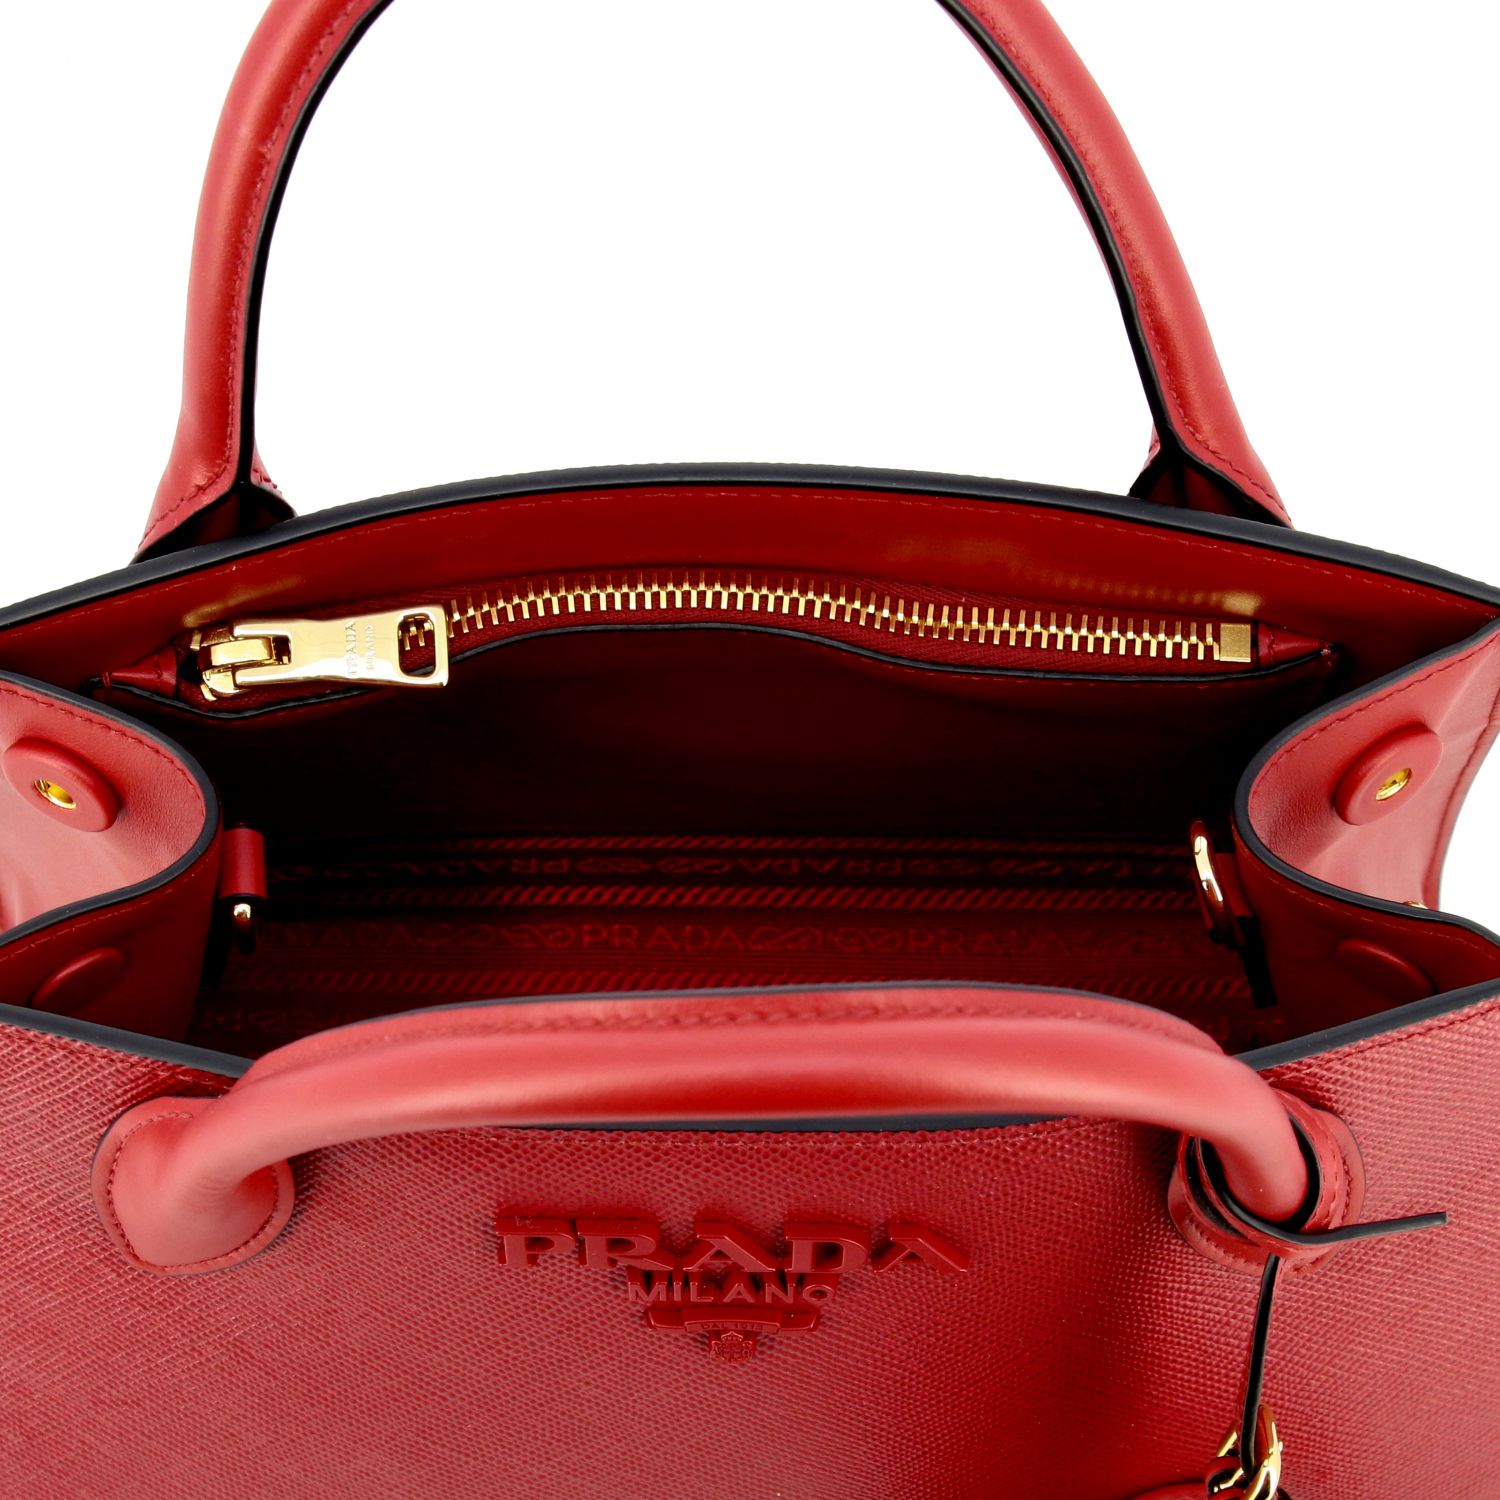 Handtasche Prada: Monochrome Tasche in Saffiano Leder Prada-Logo rot 5